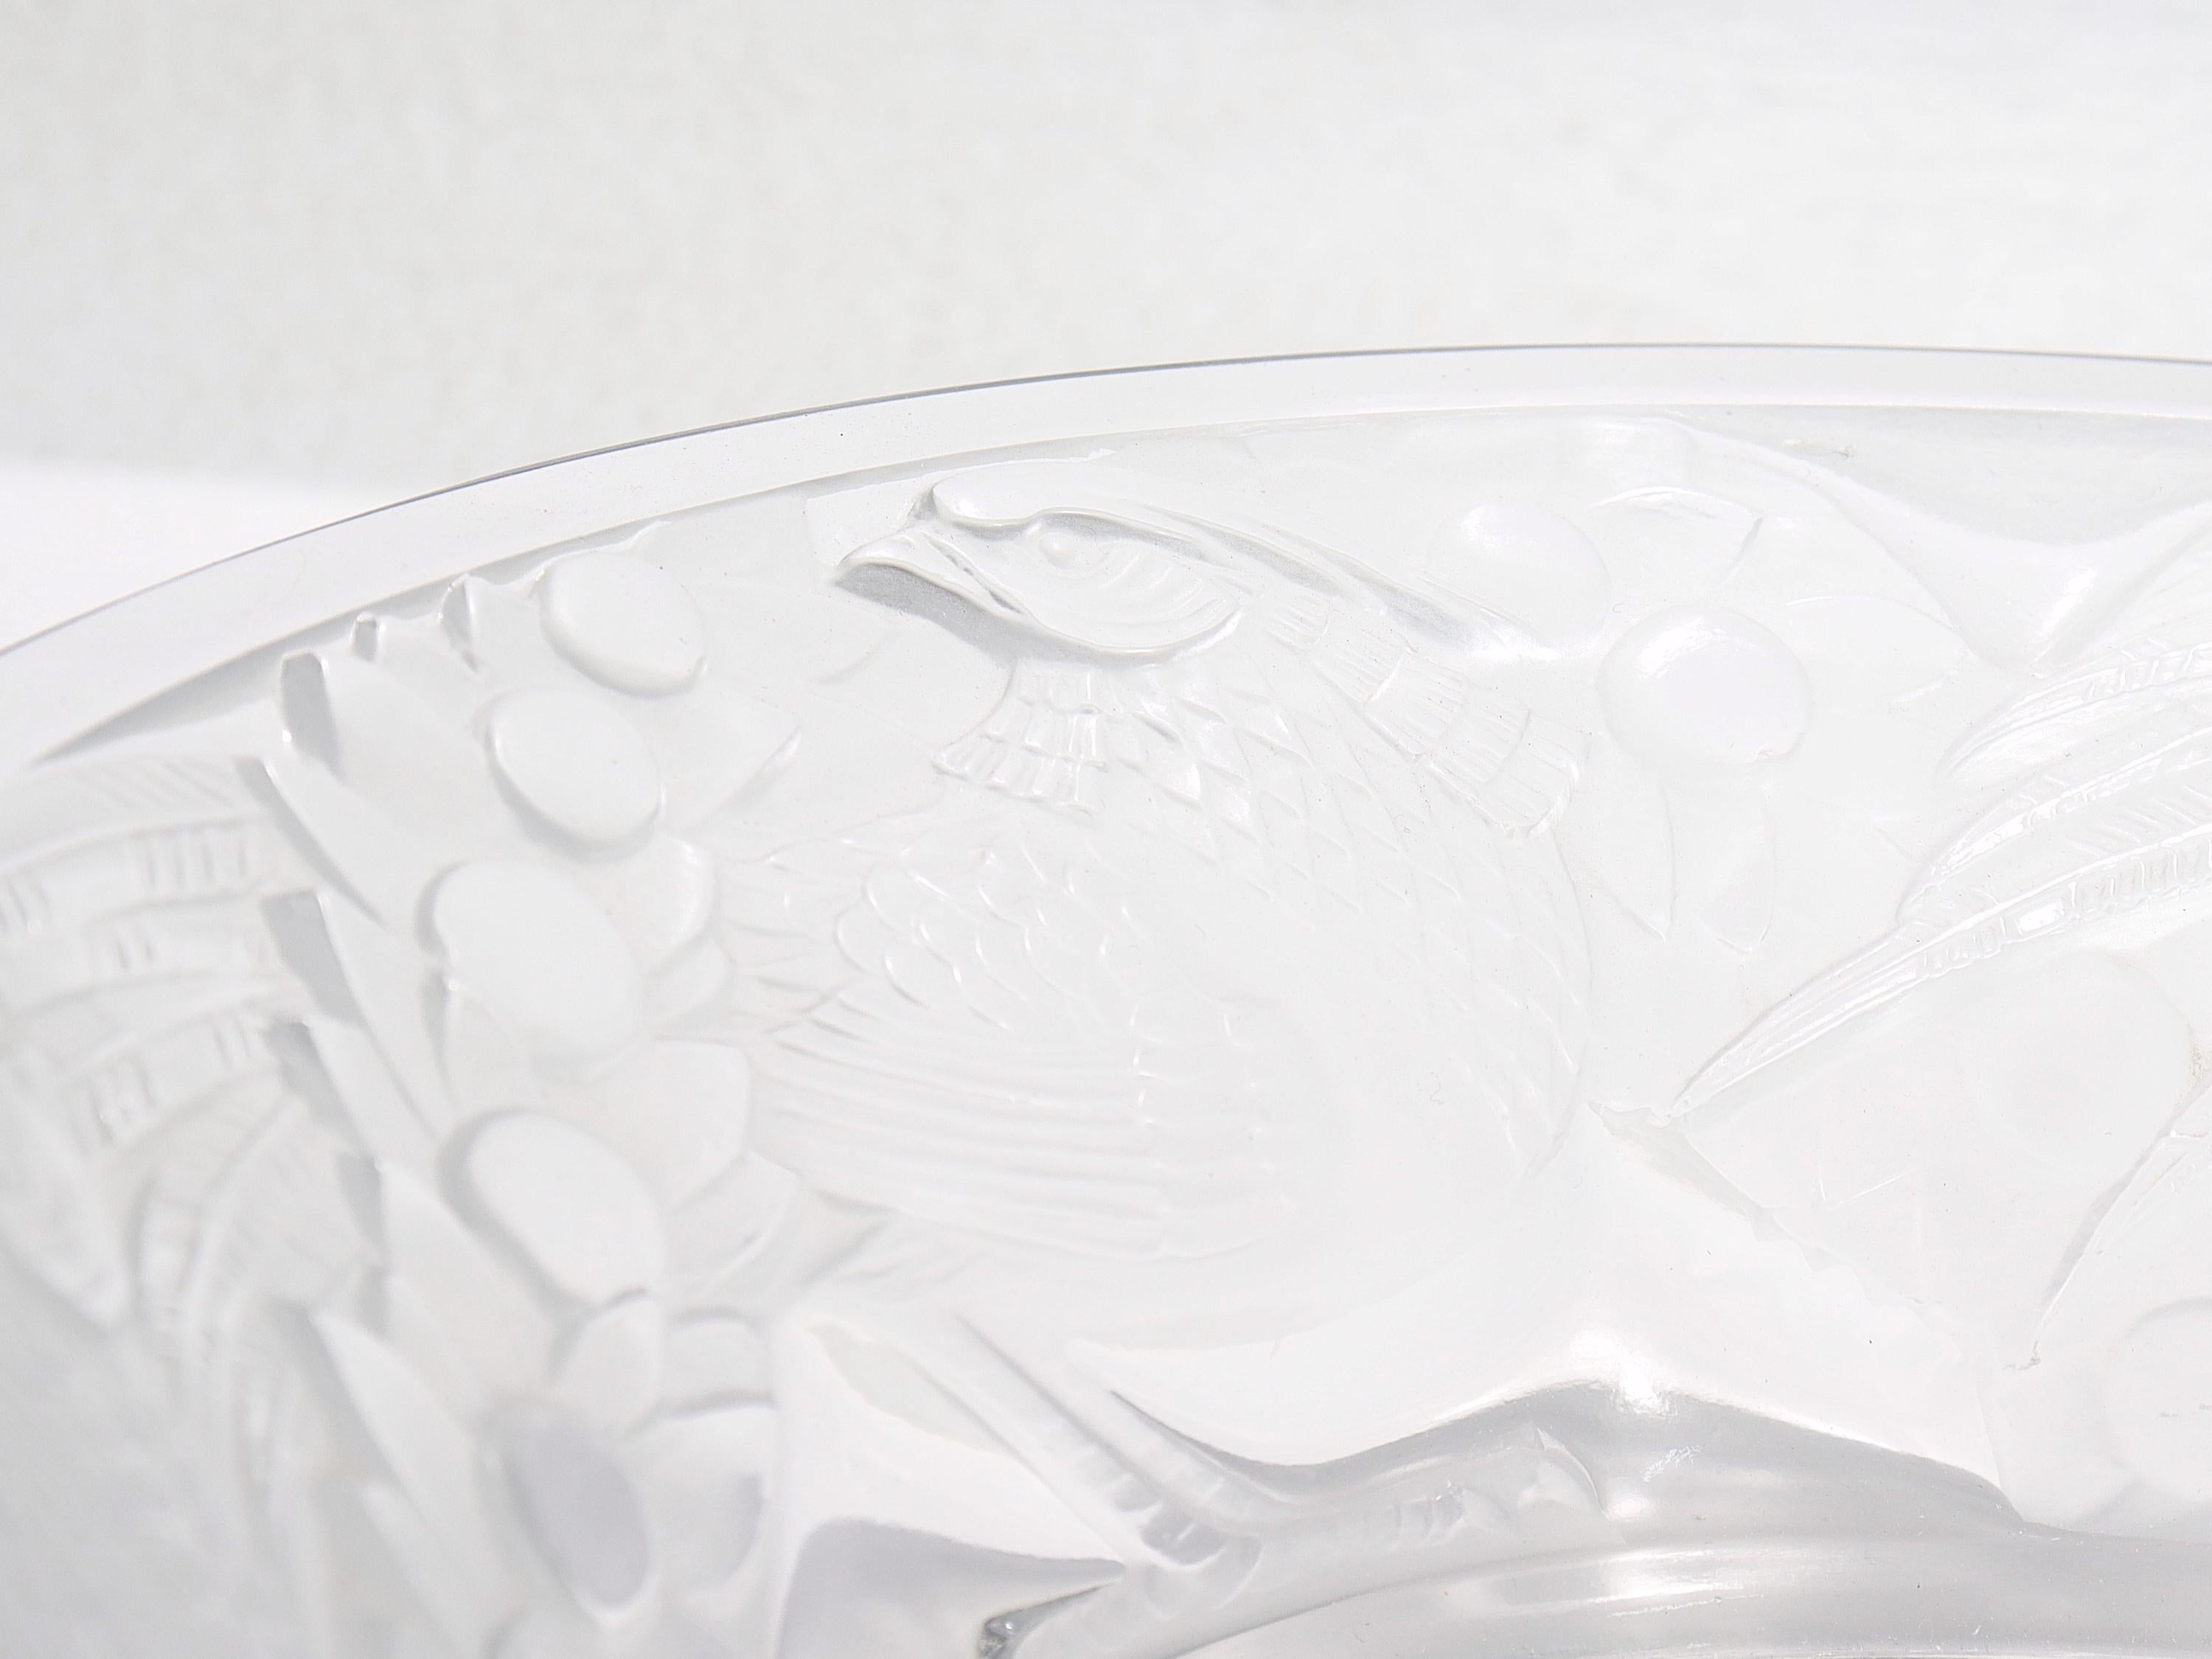 Antique Lalique Art Glass 'Faisans' Oval Bowl with Wide Rim Decor For Sale 5